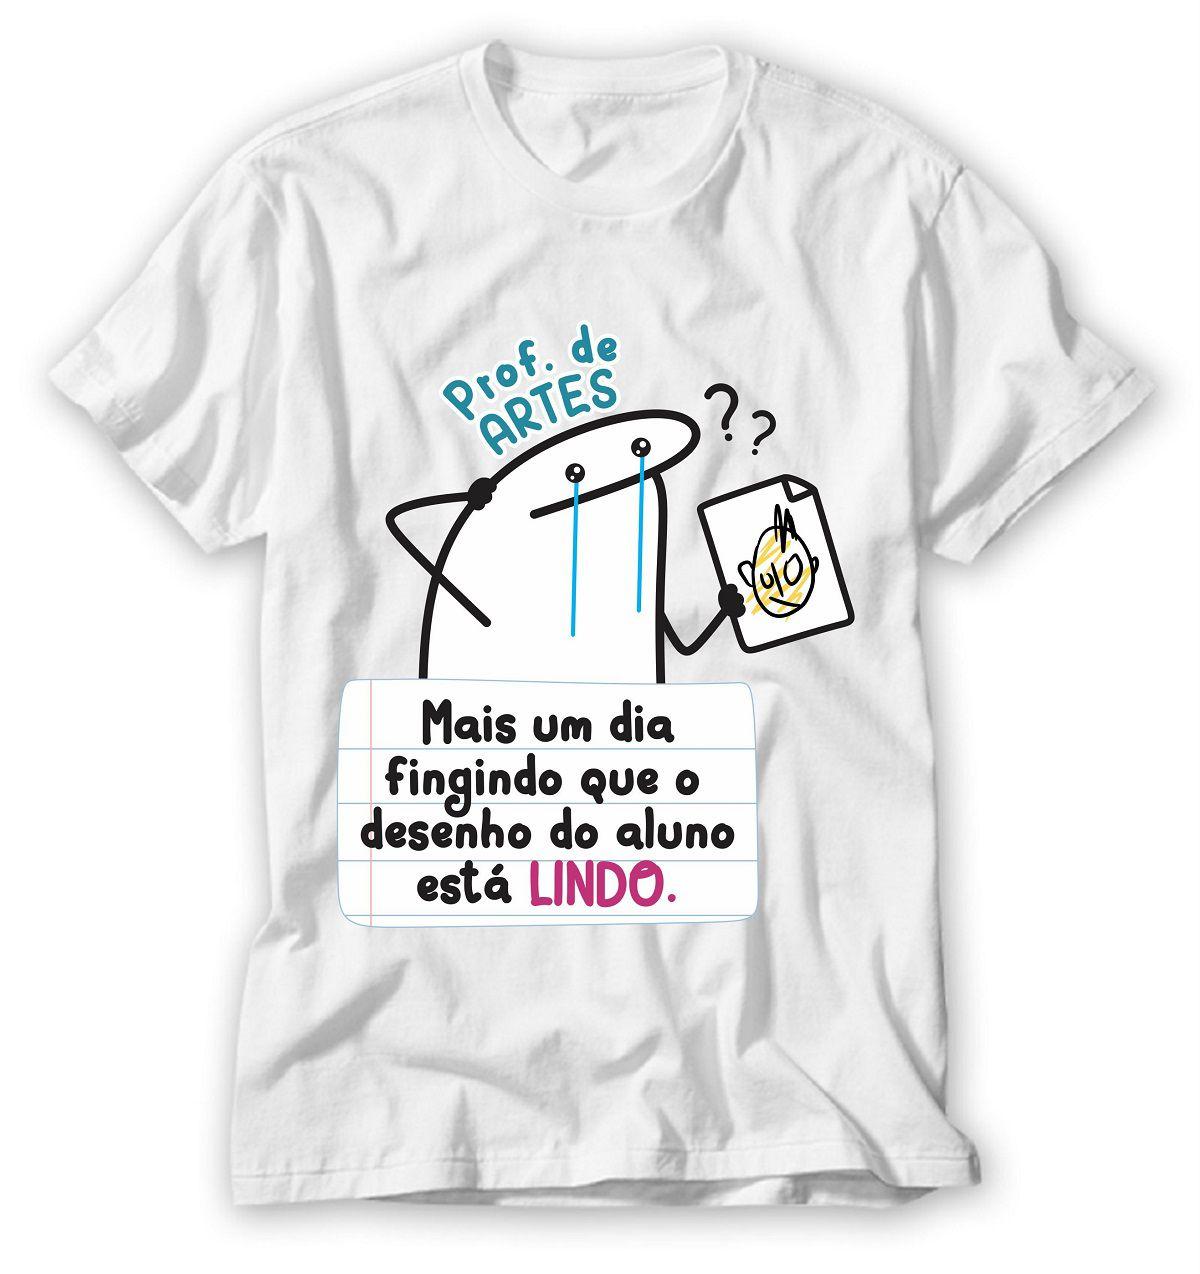 Camiseta A Prova Tá Fácil Pra Quem Estudou Professora Flork Meme;Gênero:Unissex